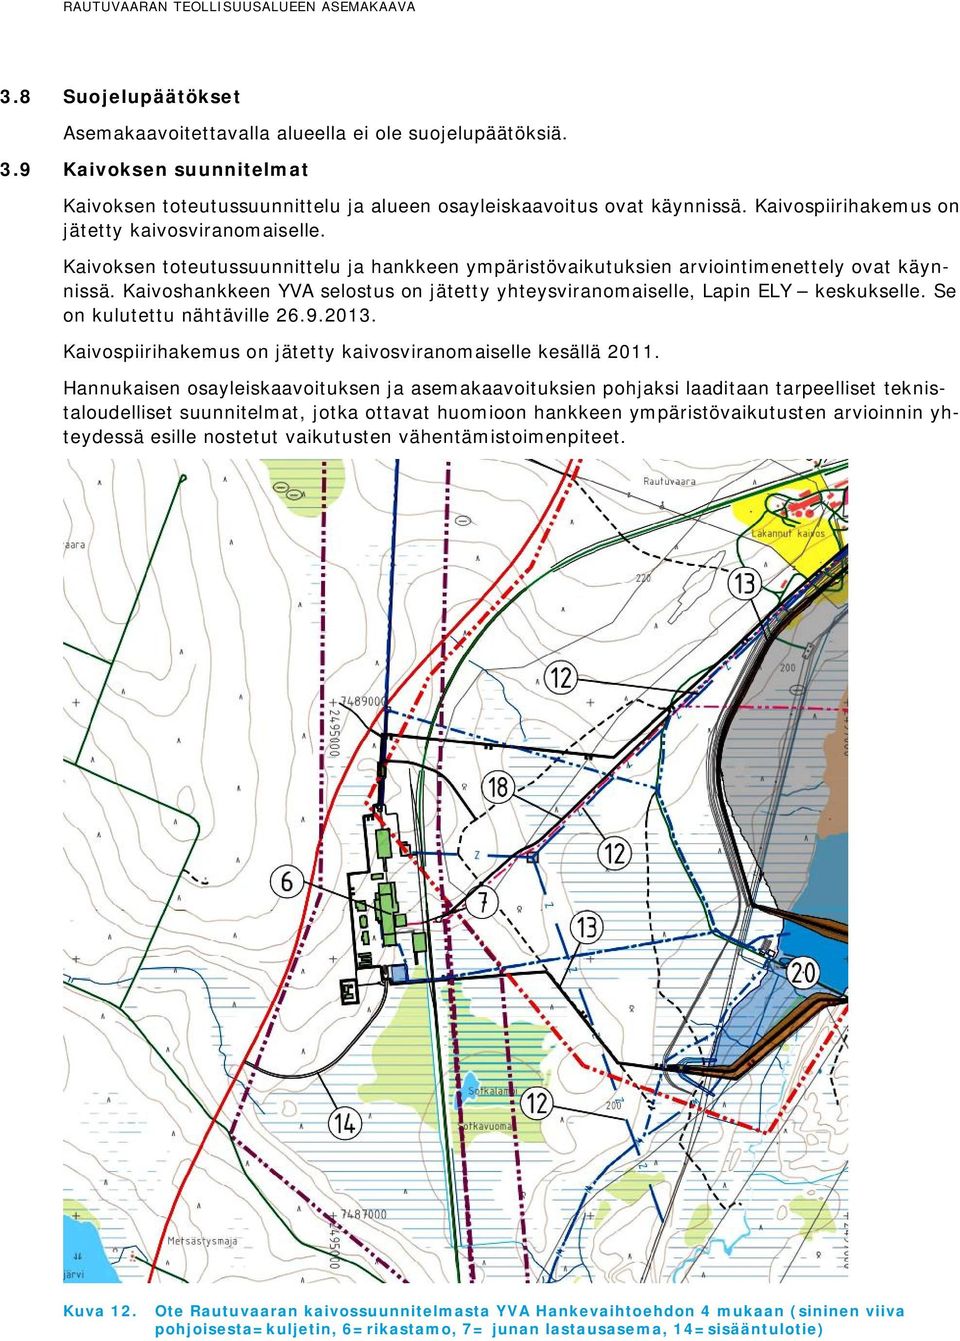 Kaivoshankkeen YVA selostus on jätetty yhteysviranomaiselle, Lapin ELY keskukselle. Se on kulutettu nähtäville 26.9.2013. Kaivospiirihakemus on jätetty kaivosviranomaiselle kesällä 2011.